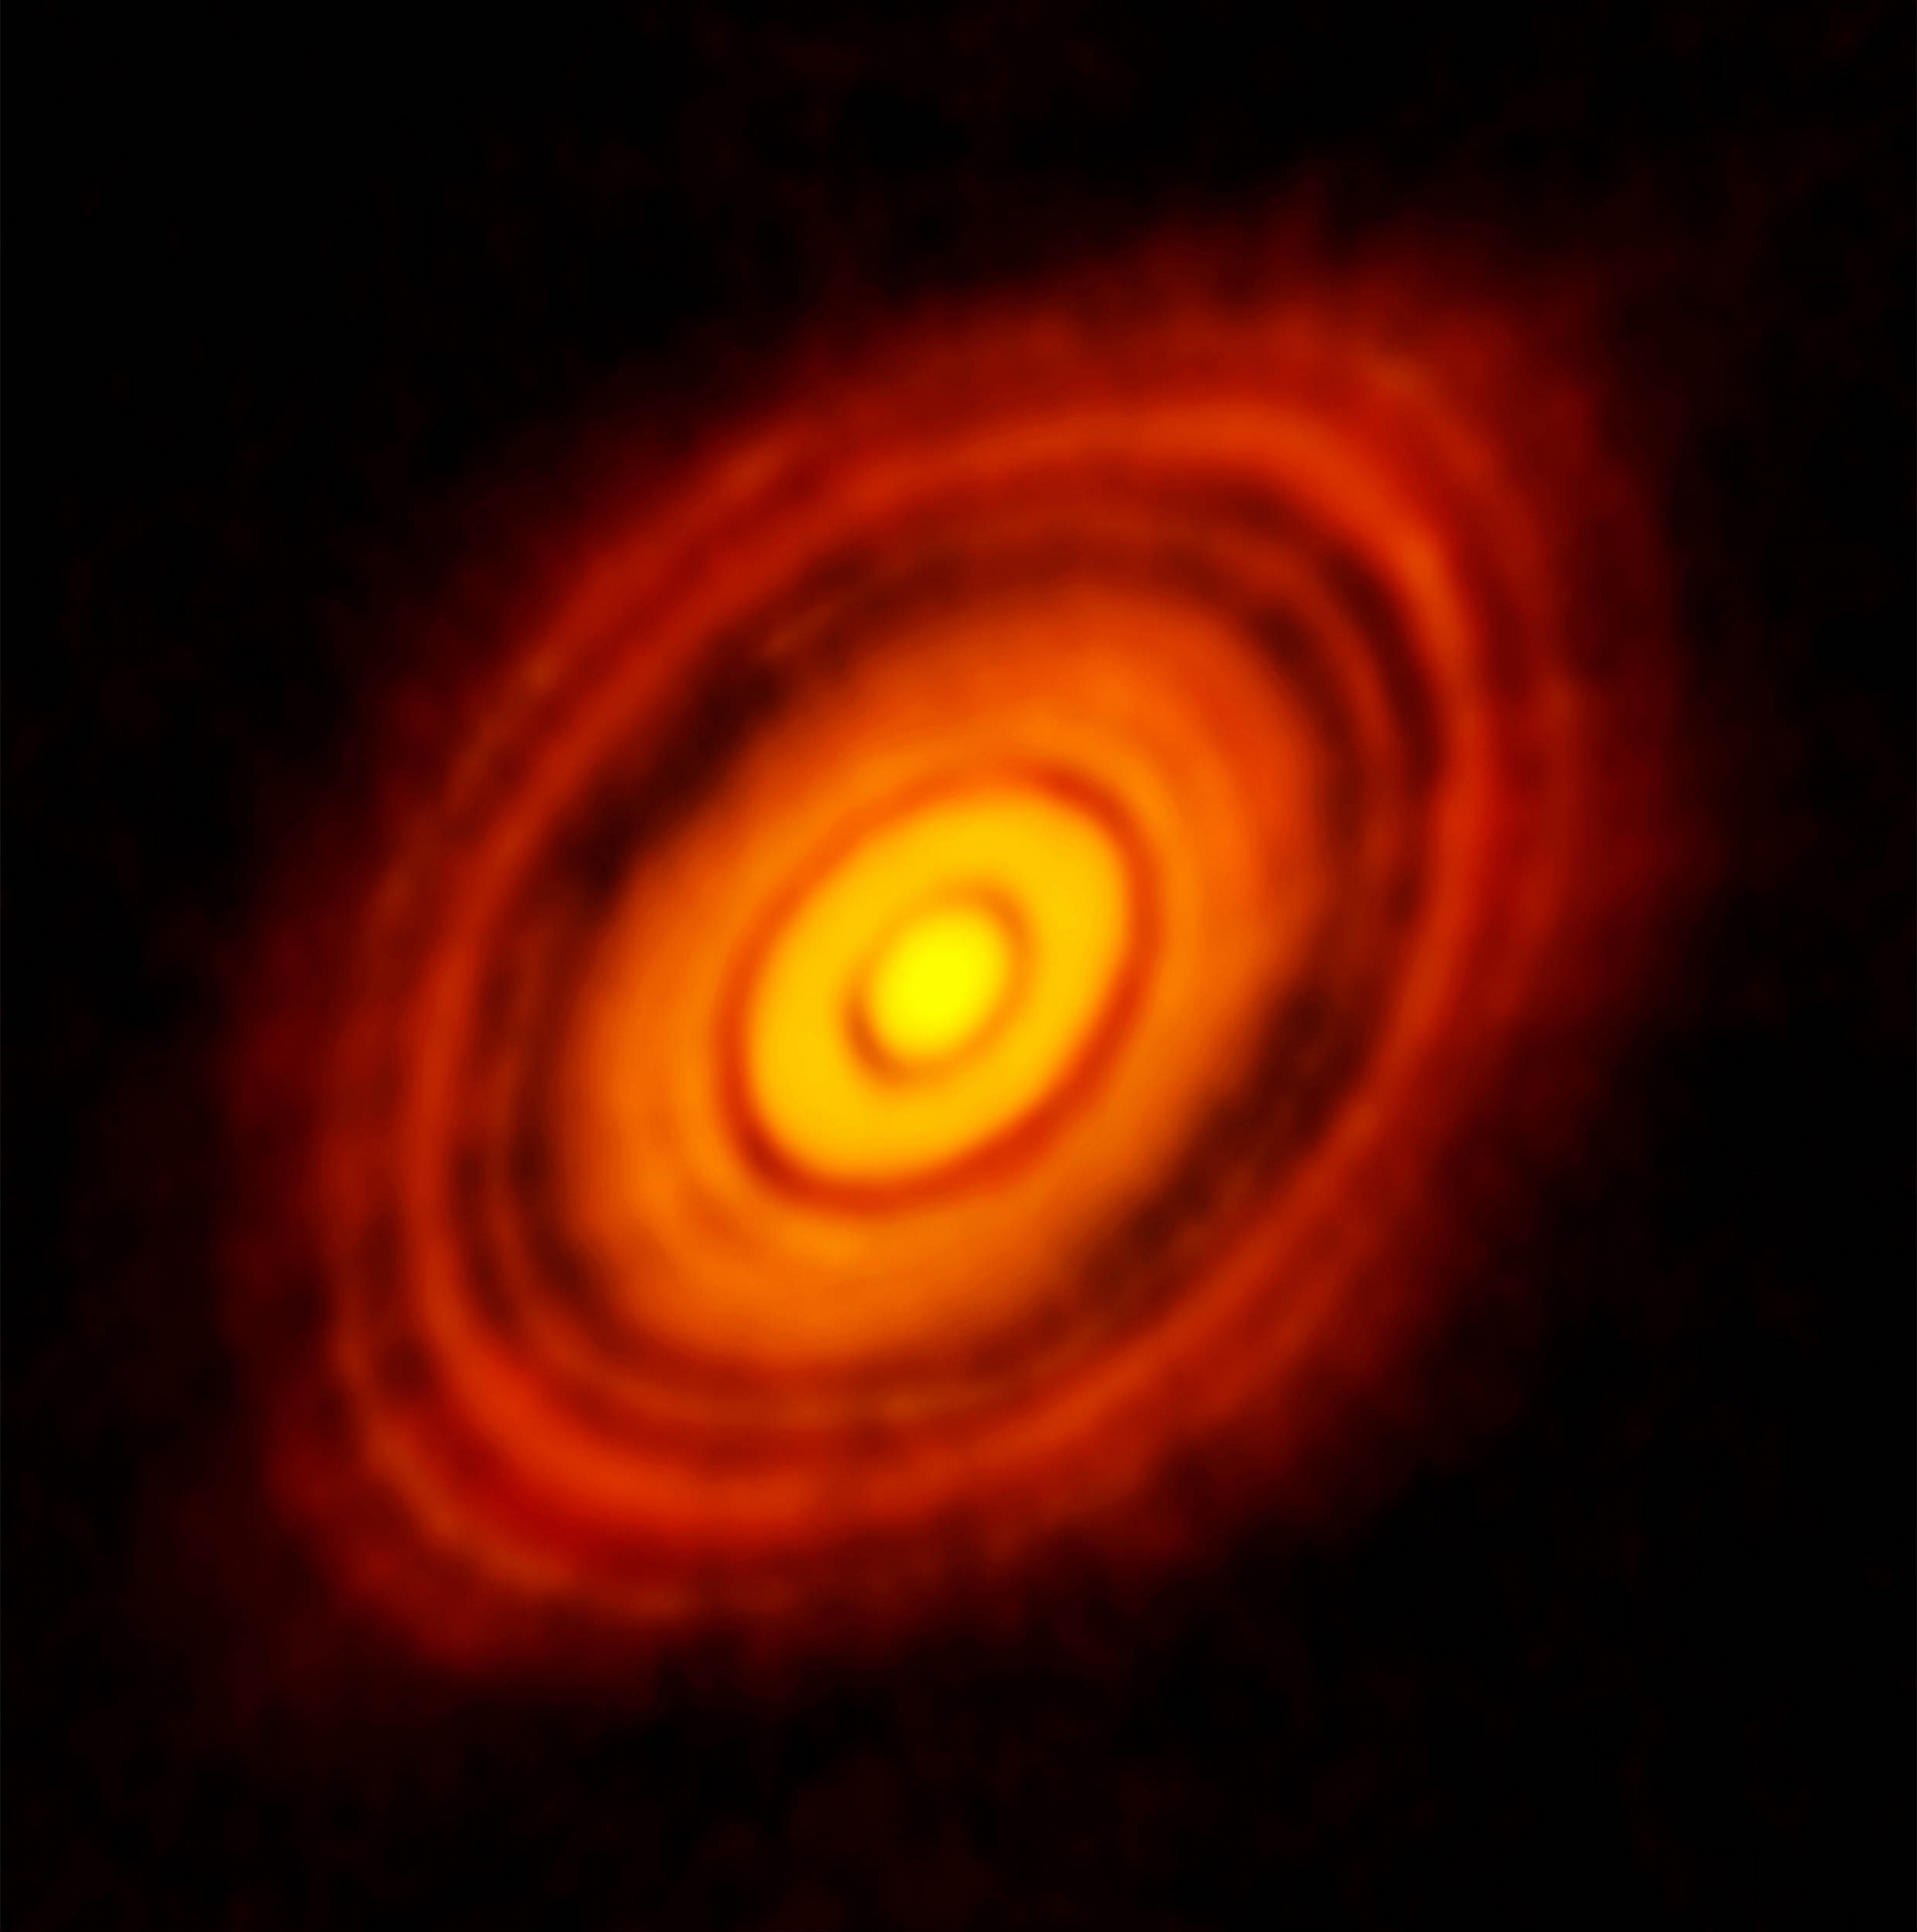 這張是拍攝連續光譜，得到金牛座 HL 原行星盤的塵埃分布，清楚呈現環與間隙的構造。 圖片來源│ALMA (ESO/NAOJ/NRAO) 